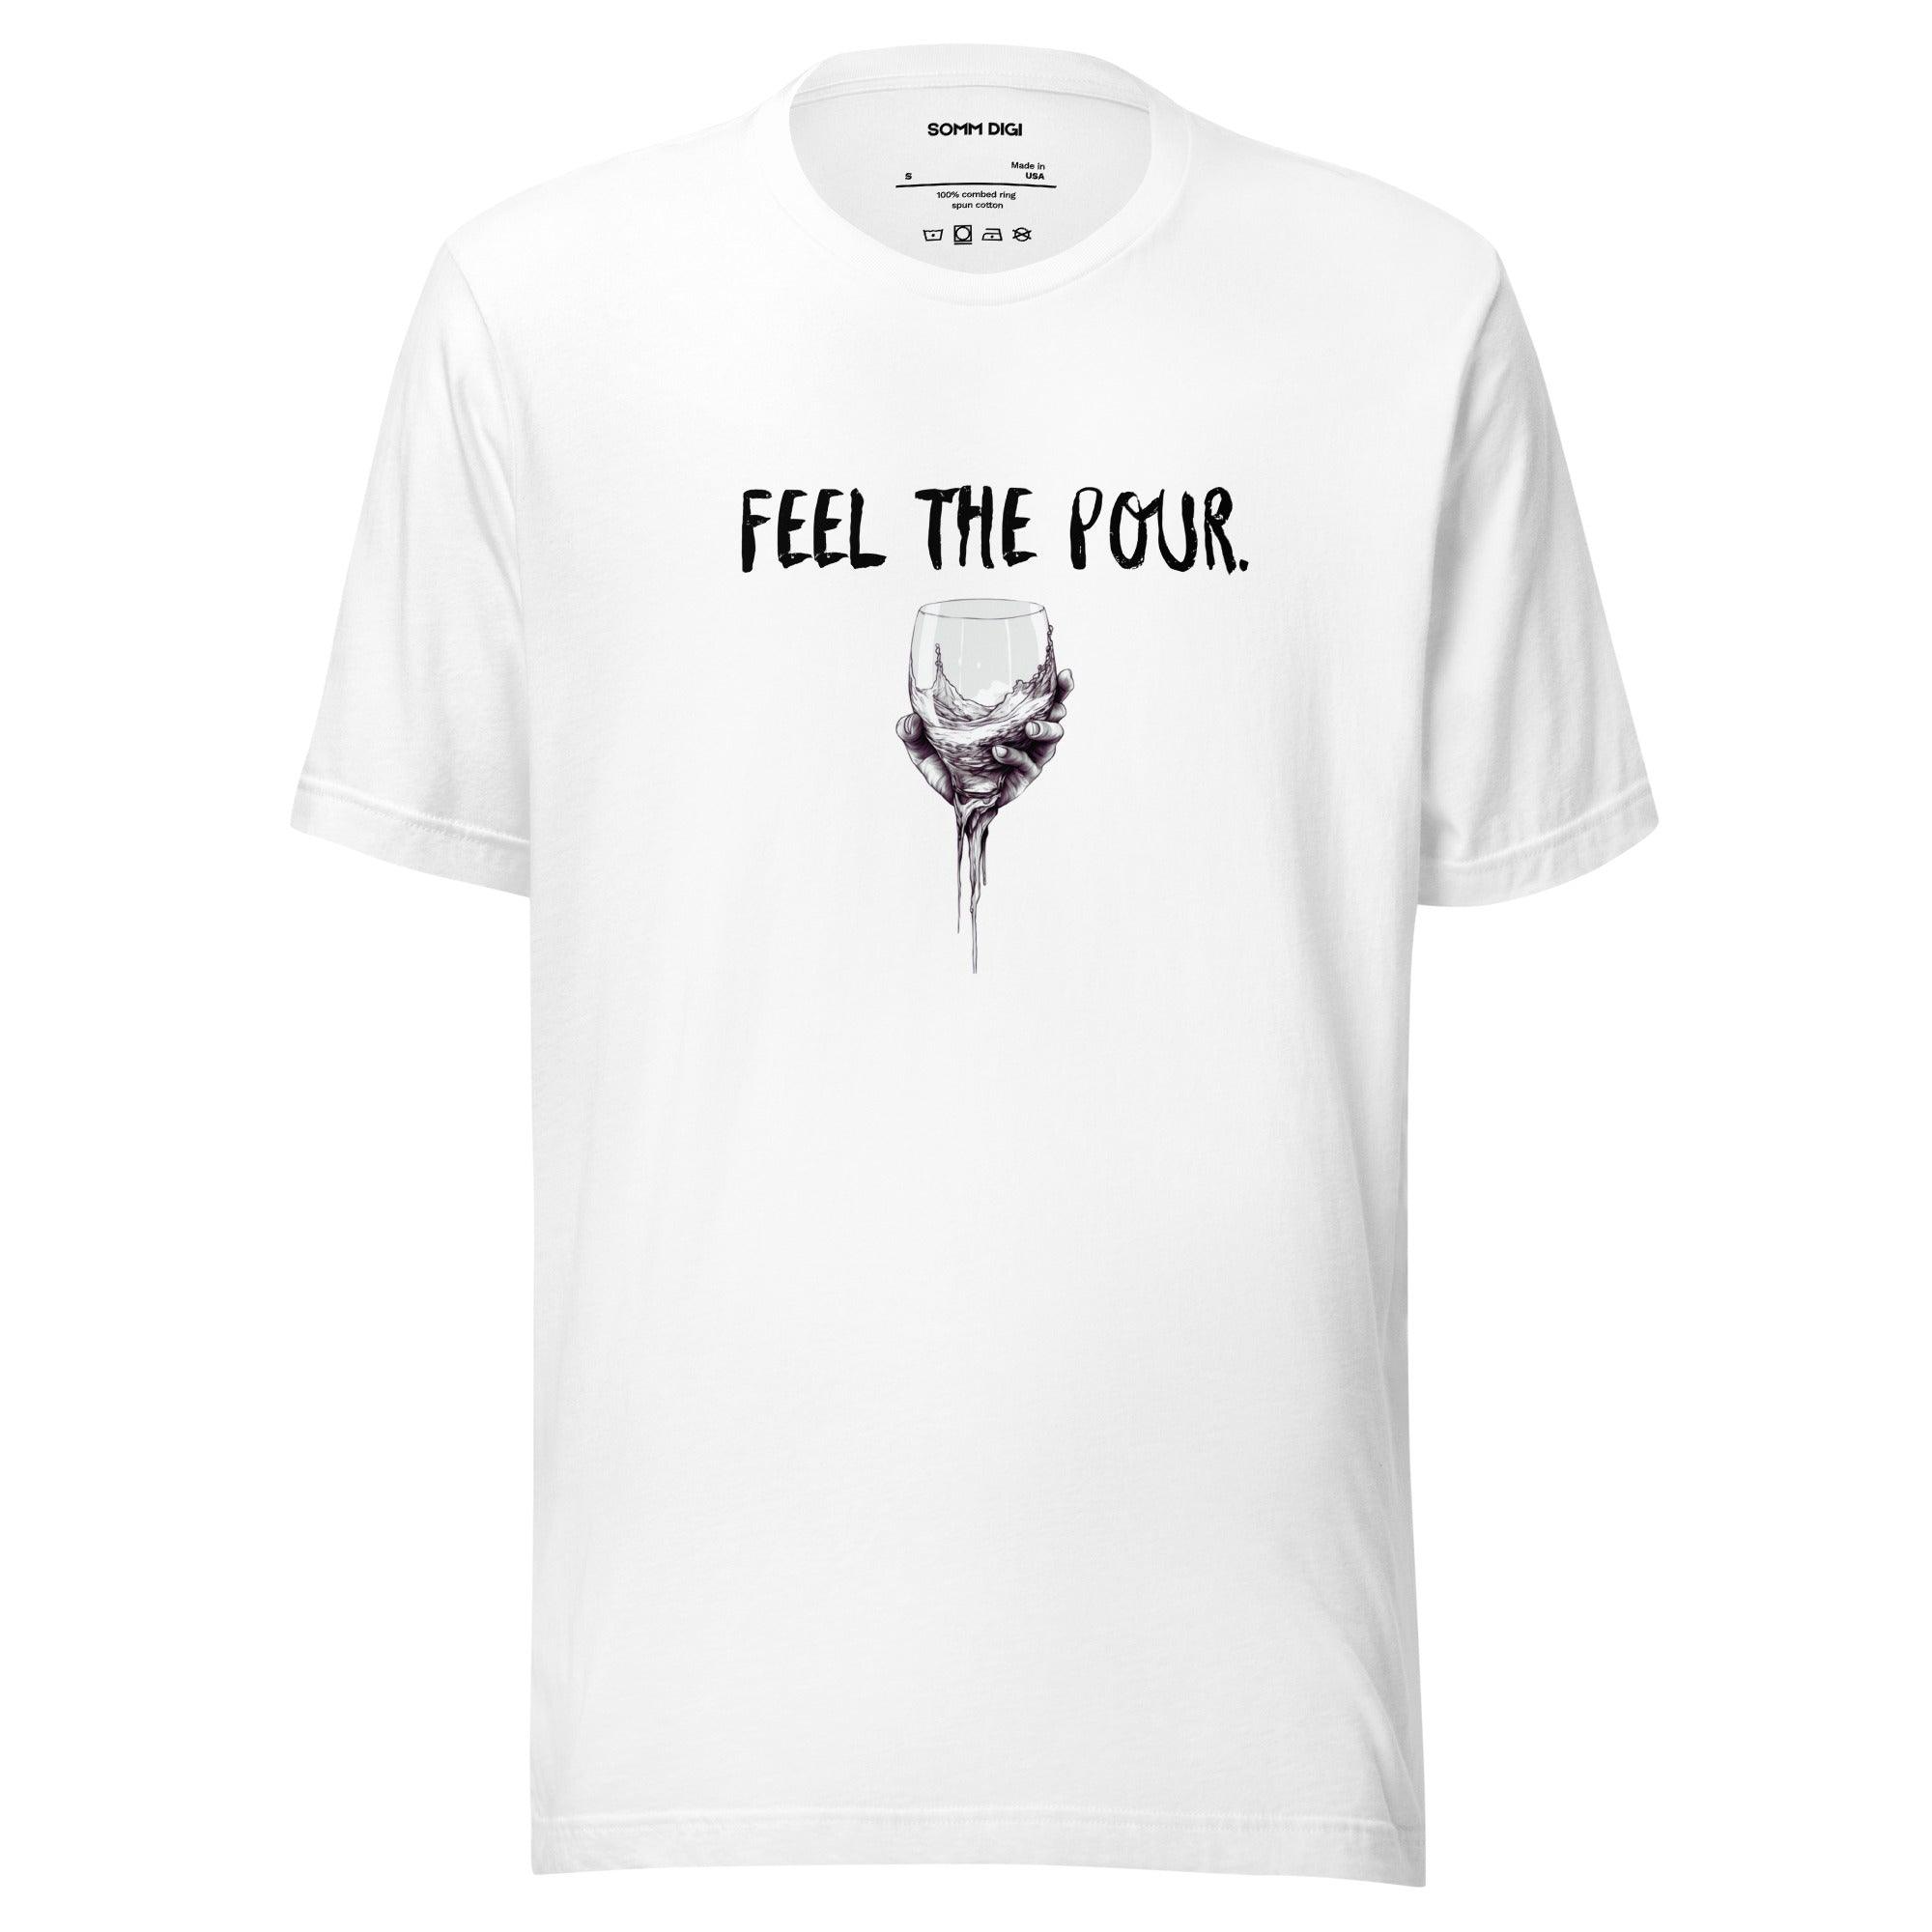 Feel the Pour - Unisex Wine Tasting Shirt